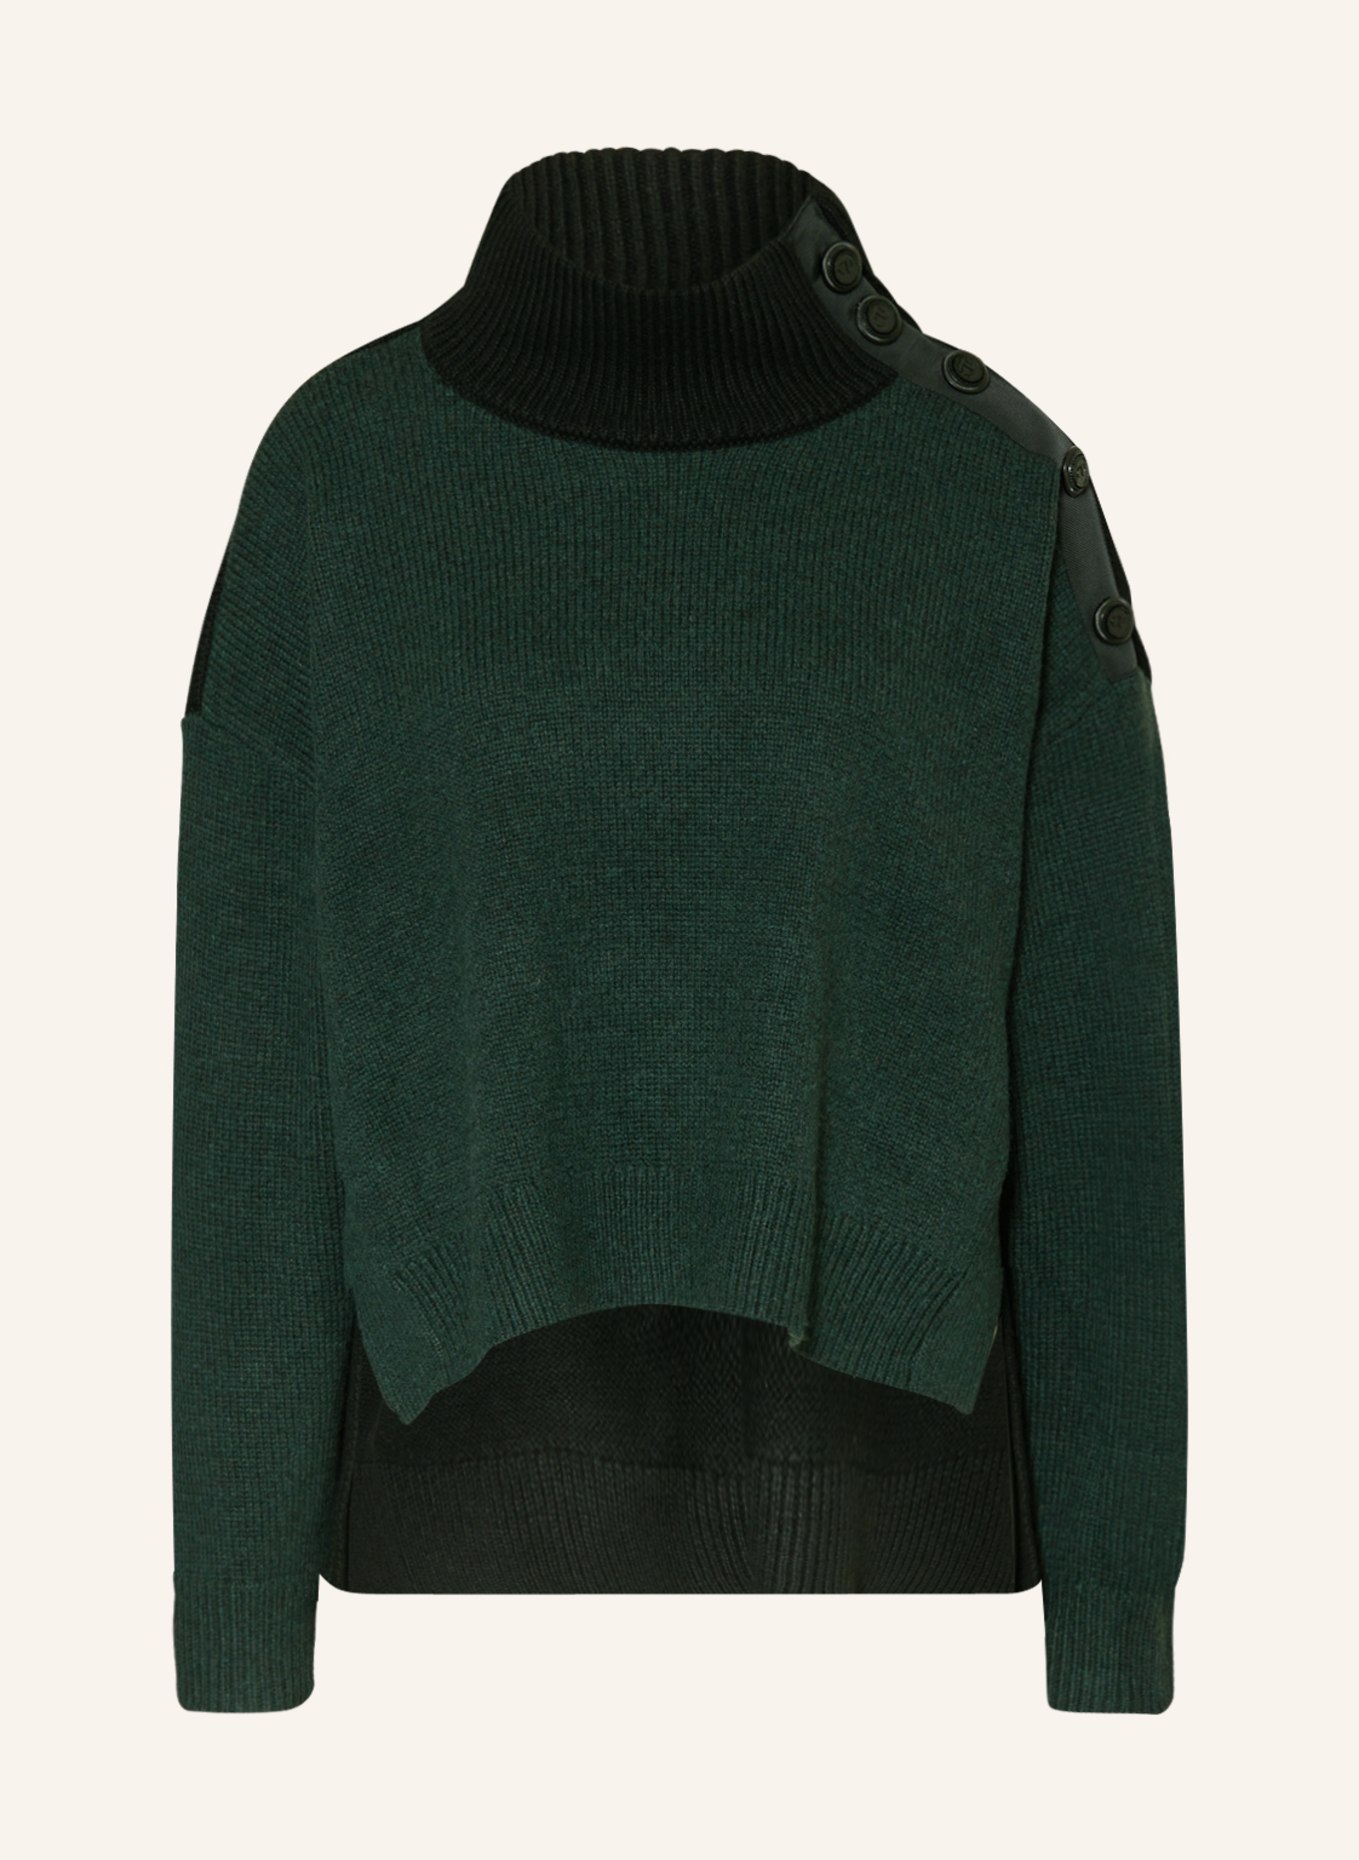 CLAUDIE PIERLOT Oversized-Pullover, Farbe: DUNKELGRÜN/ SCHWARZ (Bild 1)